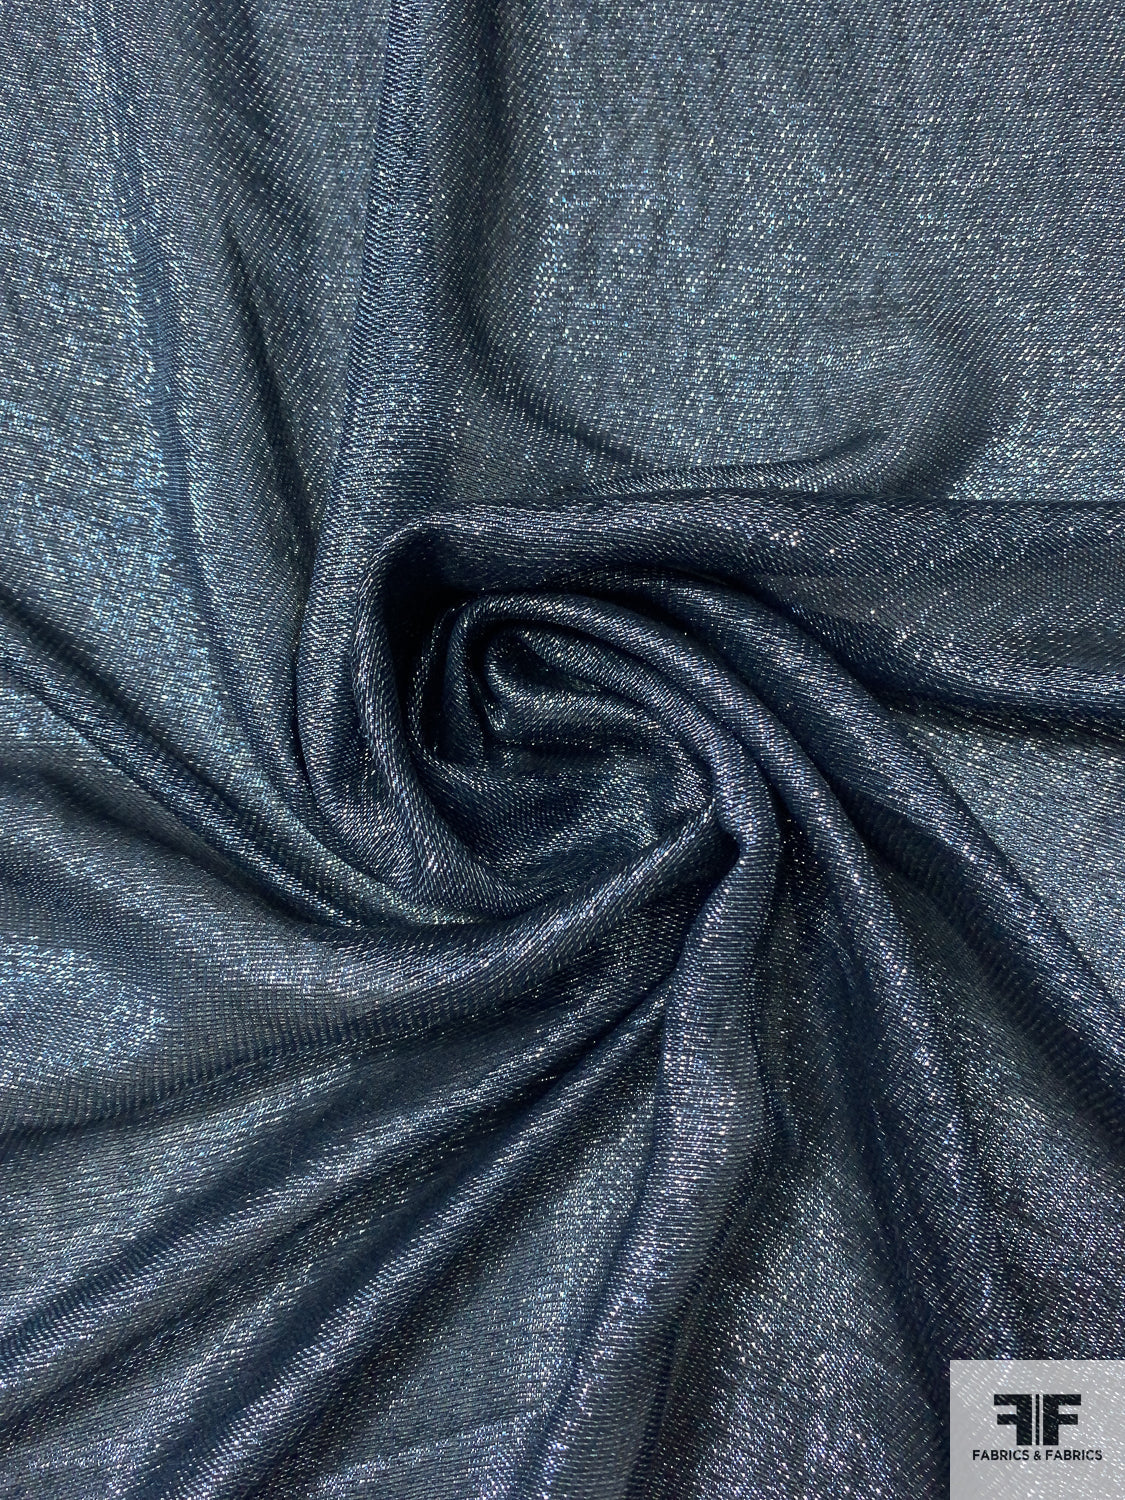 Silk Chiffon Fabric: 100% Silk Fabrics from Italy, SKU 00066066 at $84 —  Buy Silk Fabrics Online